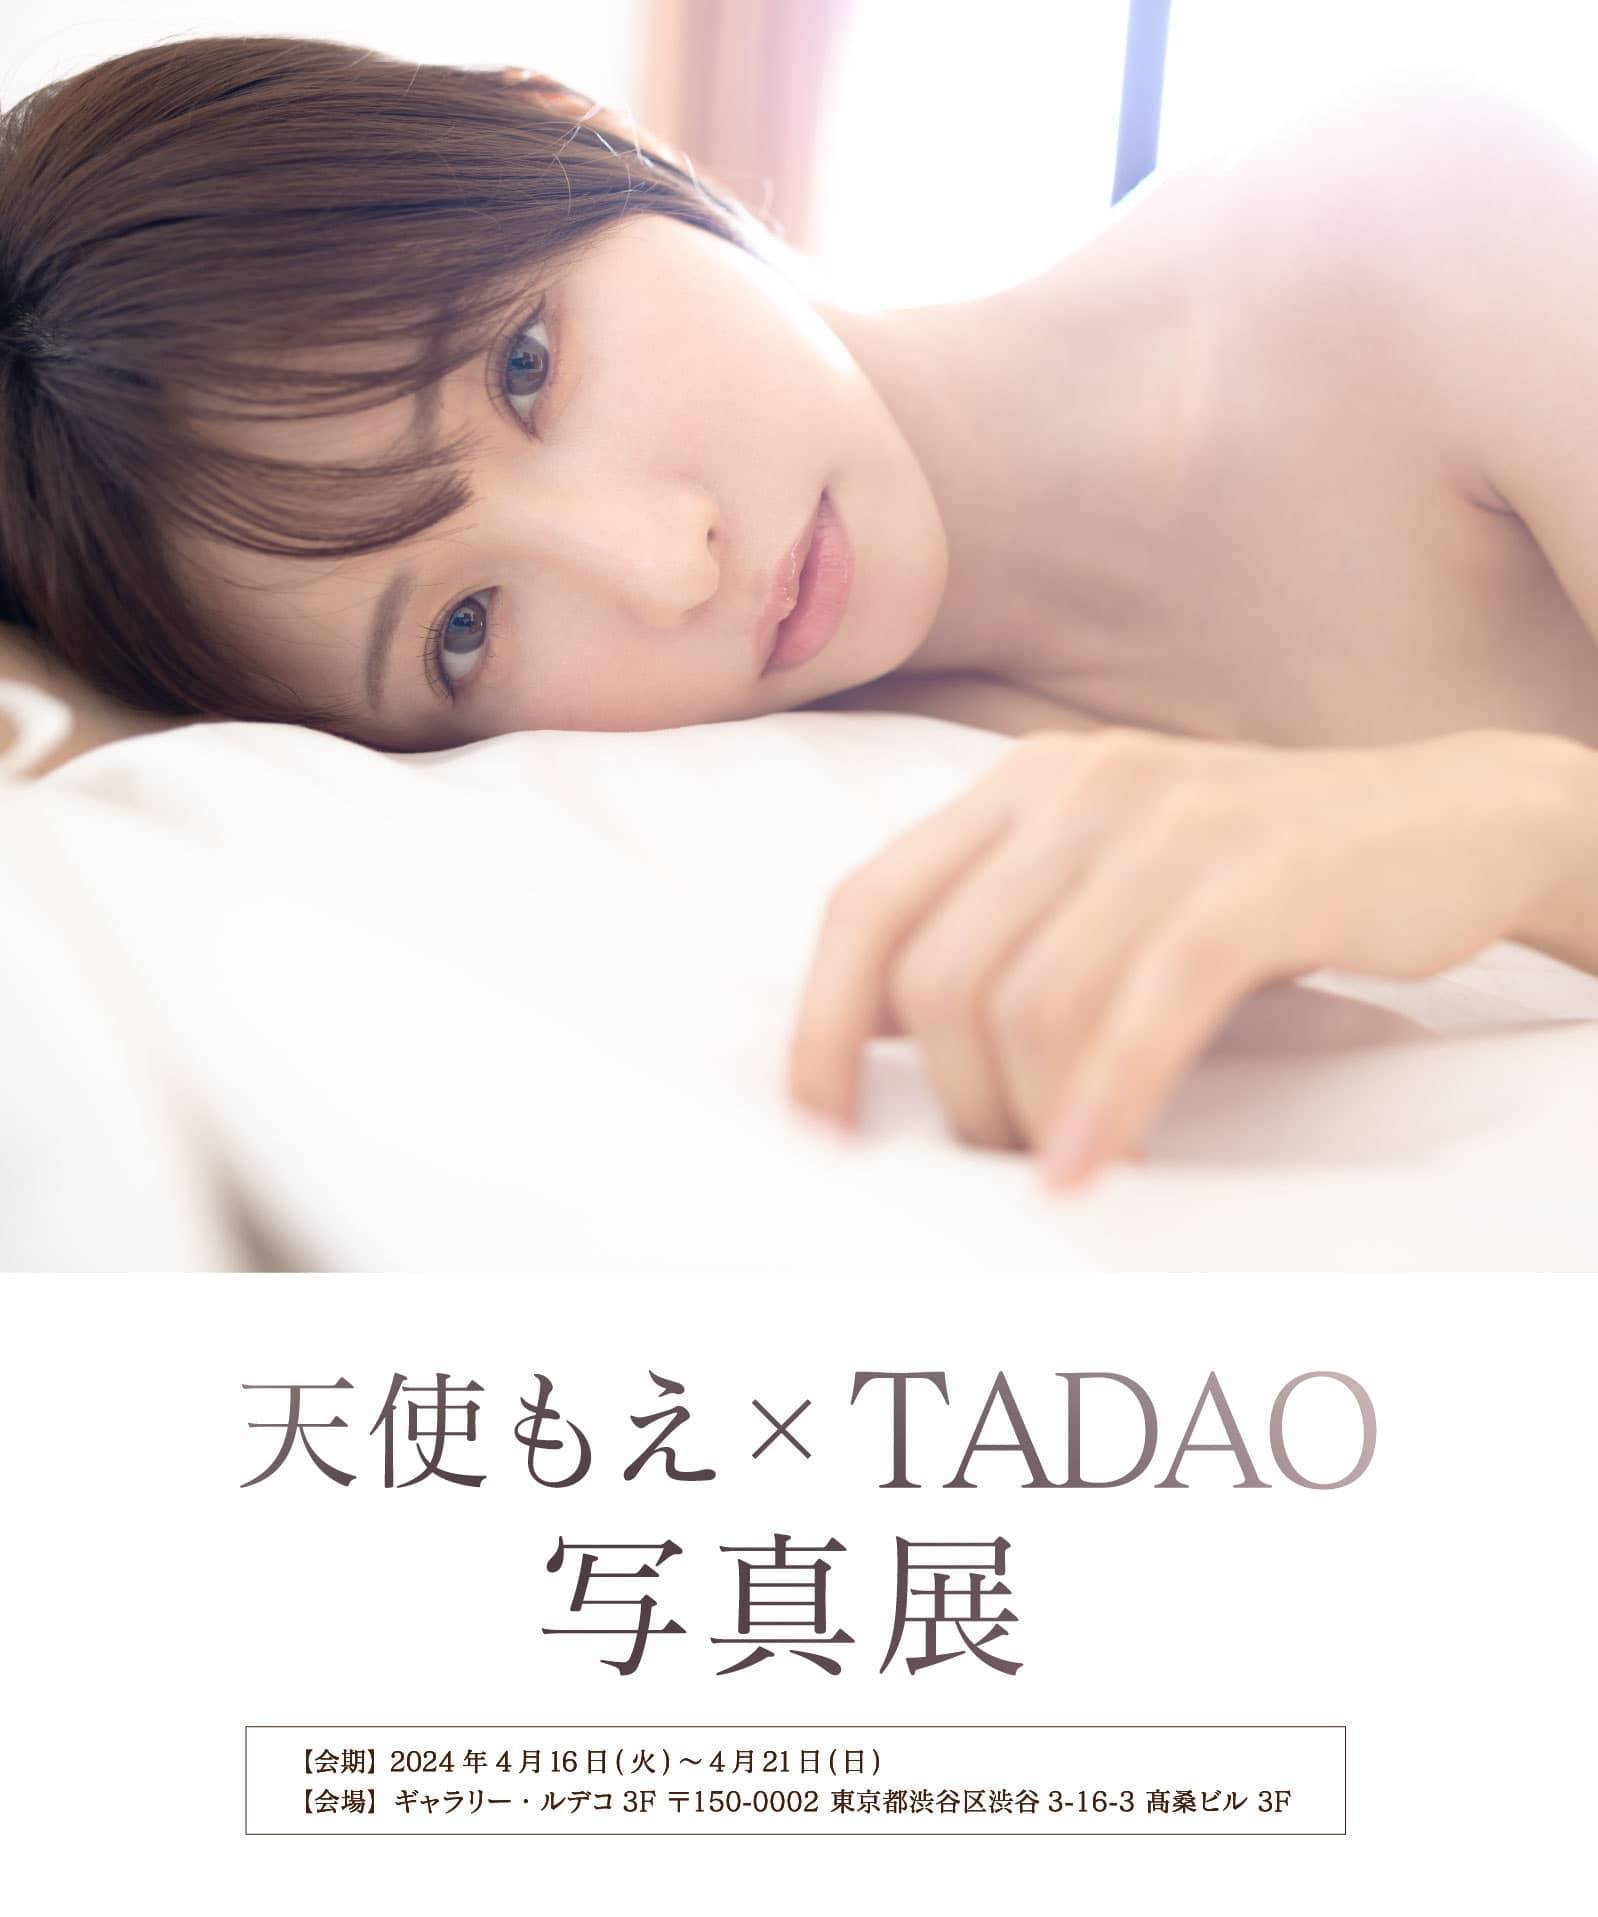 天使もえ X TADAO 写真展